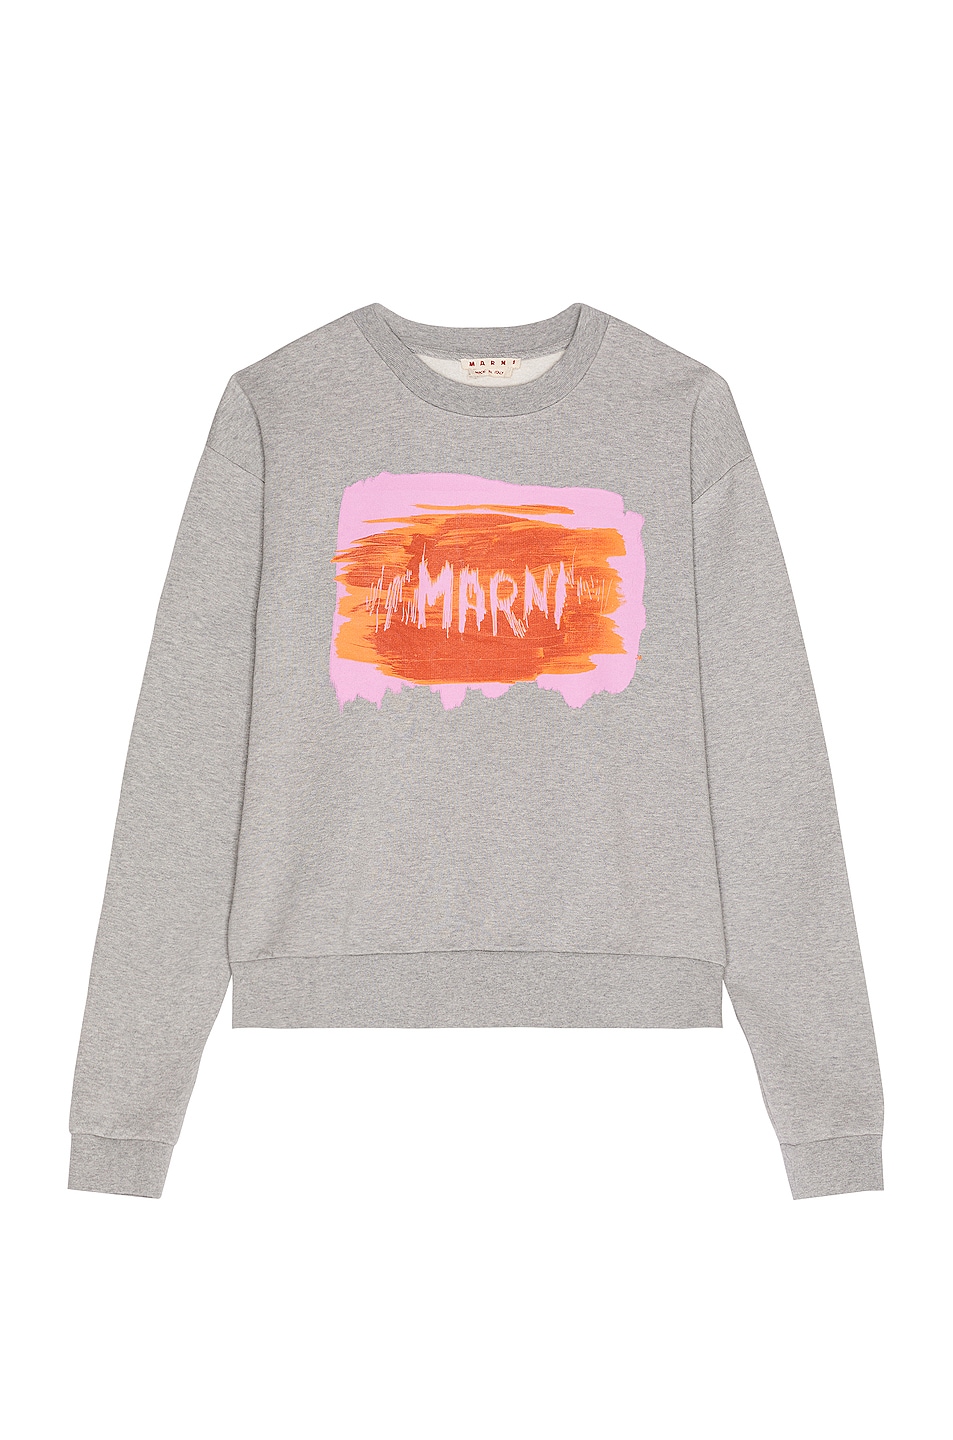 Marni Crewneck Sweatshirt in Inox | FWRD